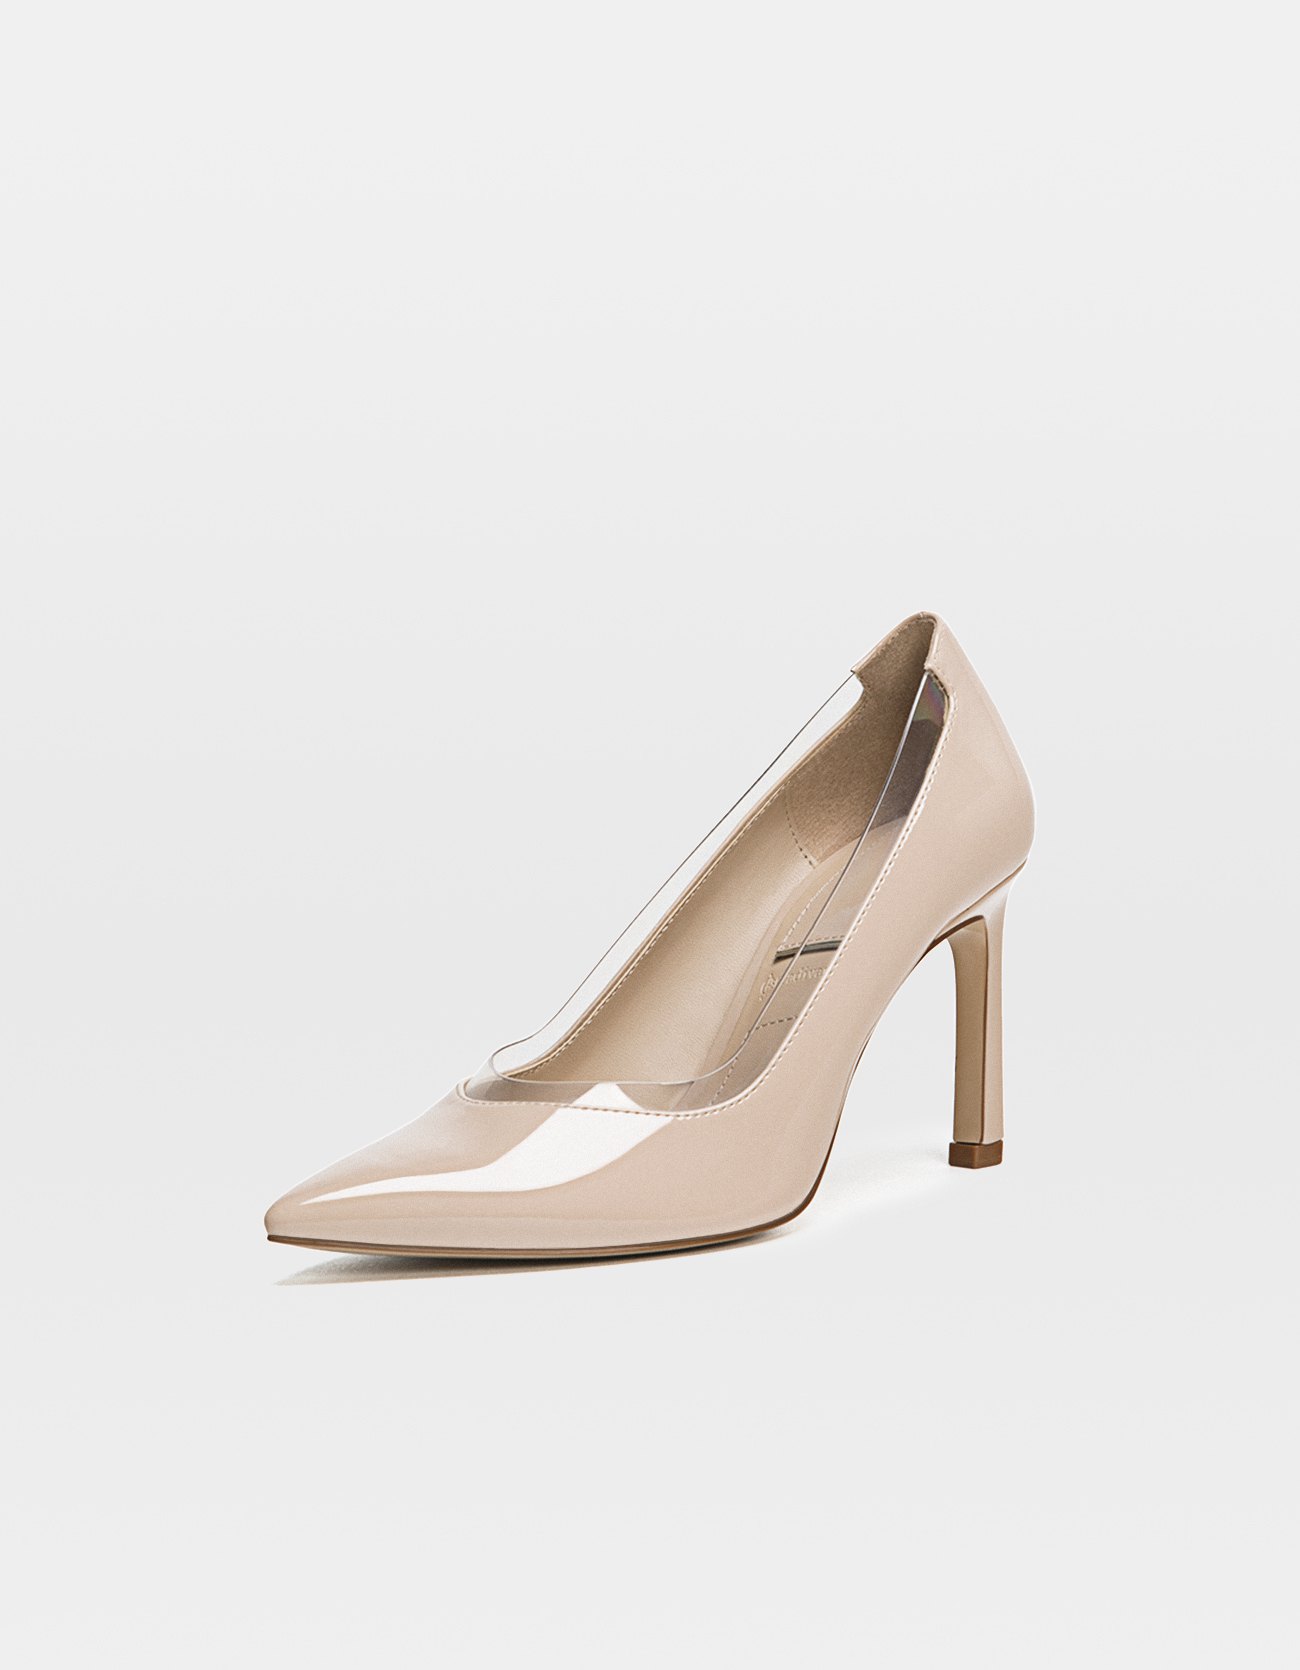 beige stiletto heels